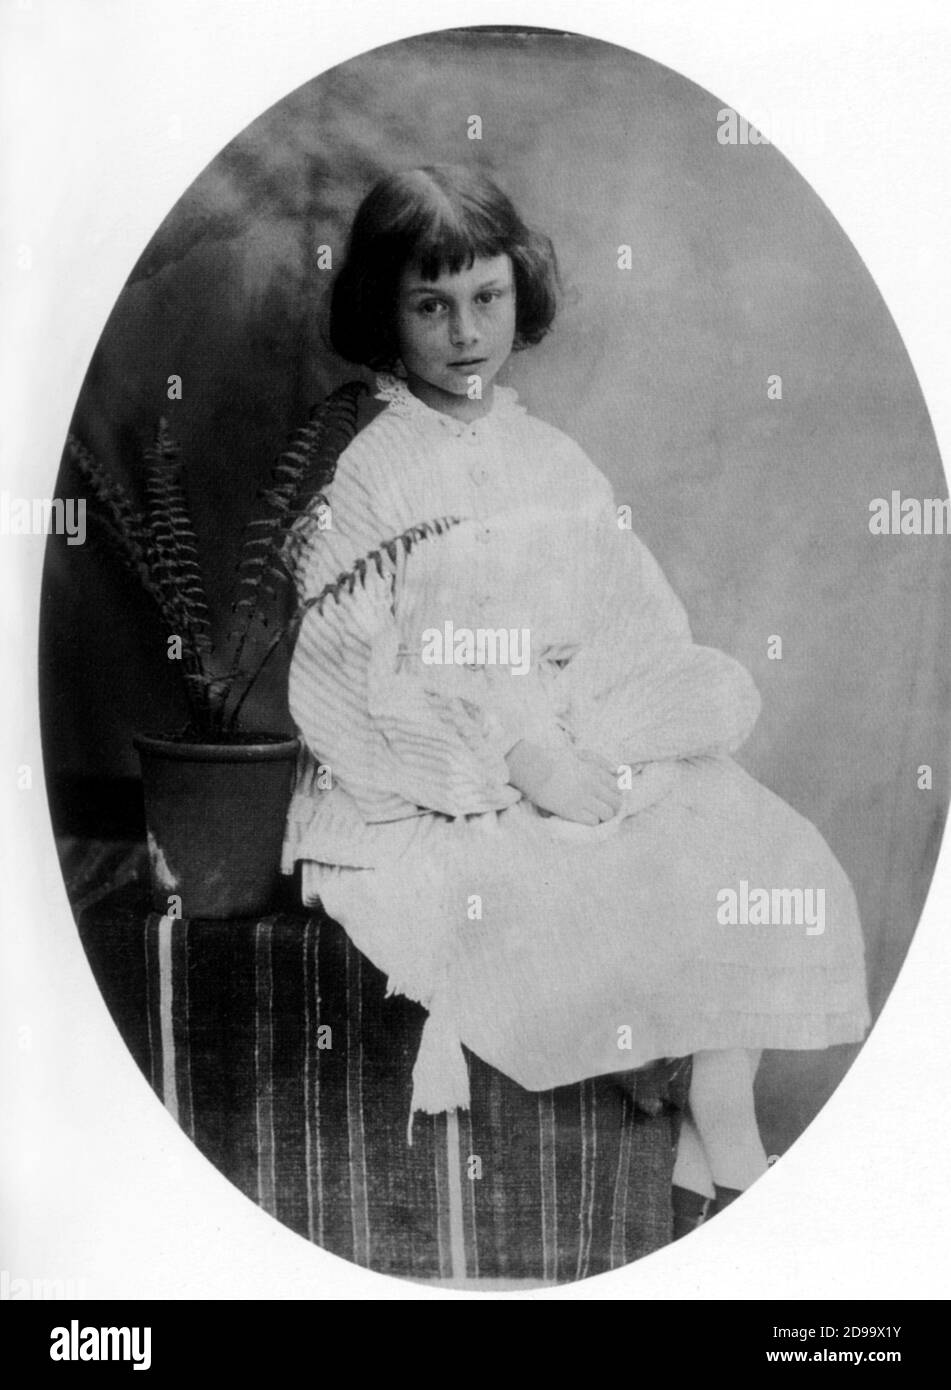 1860 , GREAT BRITAIN : Alice Liddell ( the little Muse  model for ALICE IN WONDERLAND - 1865  ) portraied by the photographer, mathematician and writer LEWIS  CARROLL ( born Charles Lutwidge Dodgson ,  1832 - 1898 ) - LETTERATURA - LITERATURE - SCRITTORE - bambina - portrait - ritratto - child - personalità da giovani bambini - personality child  -  felce - fern  ----  Archivio GBB Stock Photo